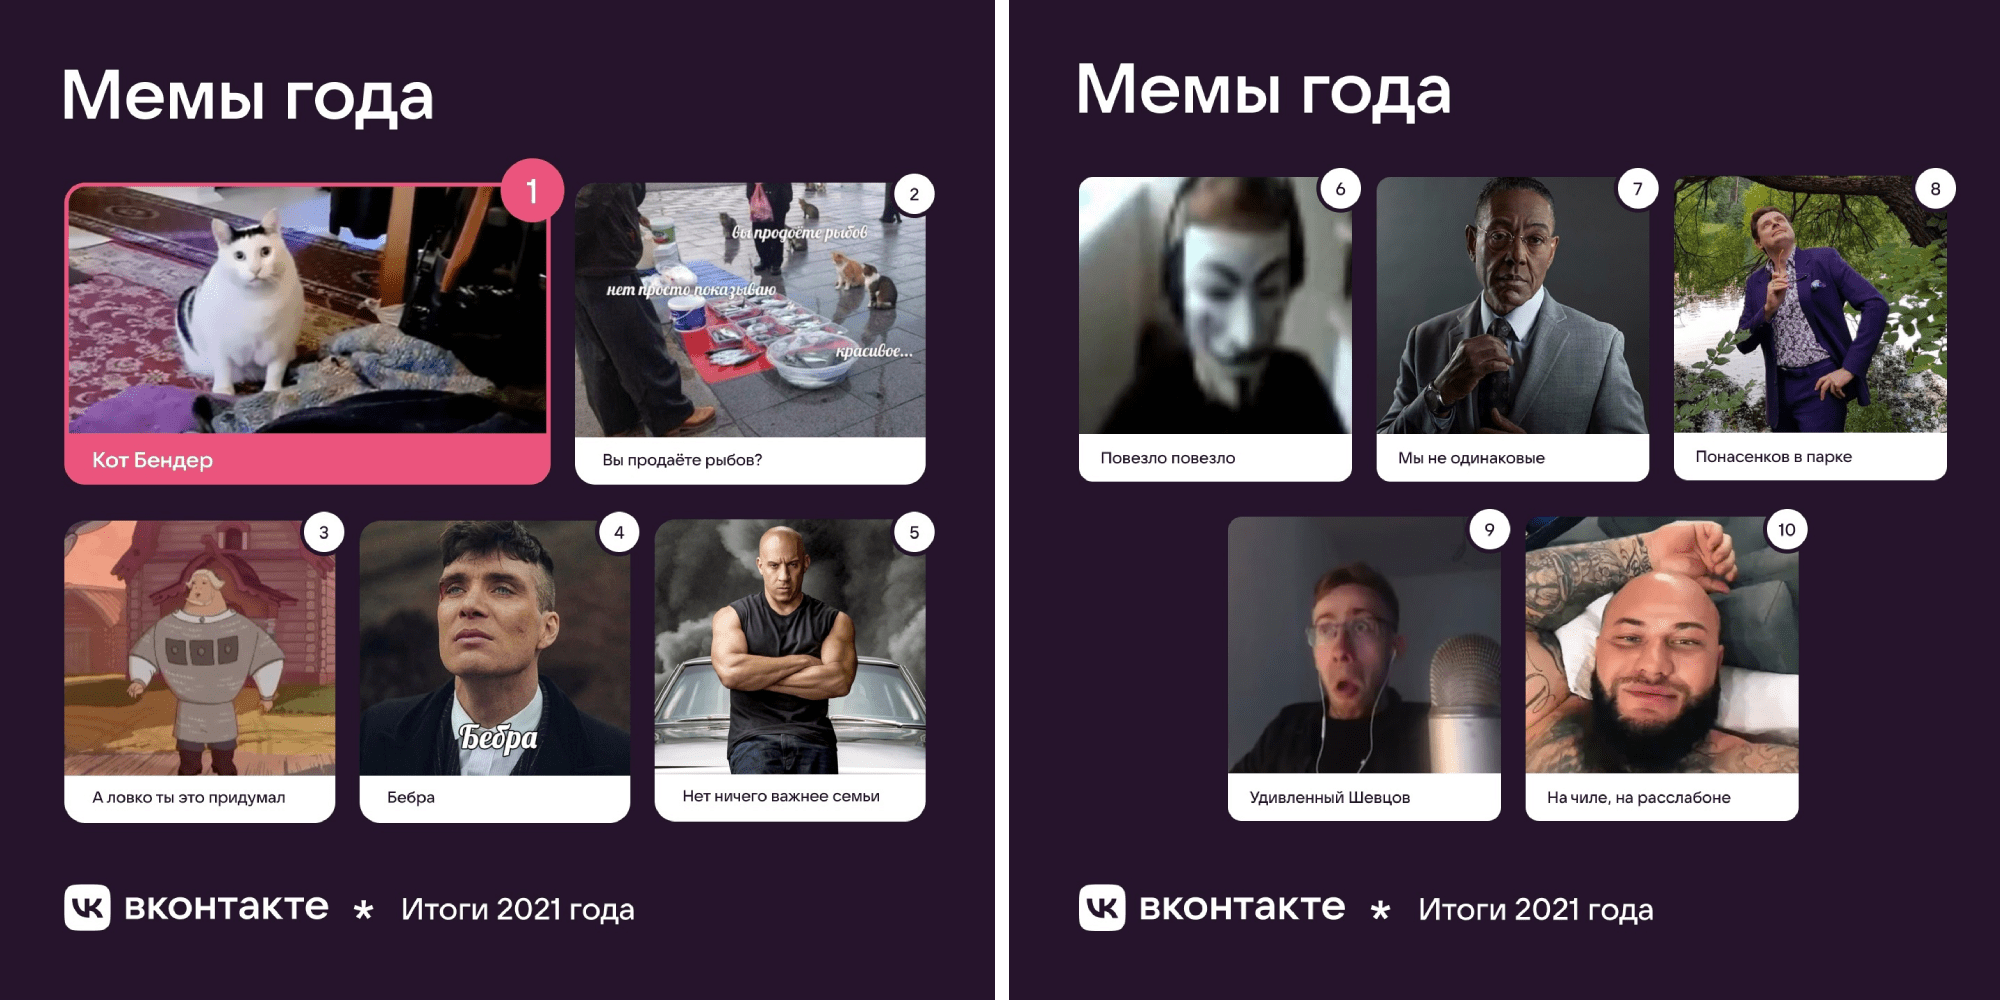 Мемы 2021 года по версии ВКонтакте и Memepedia 